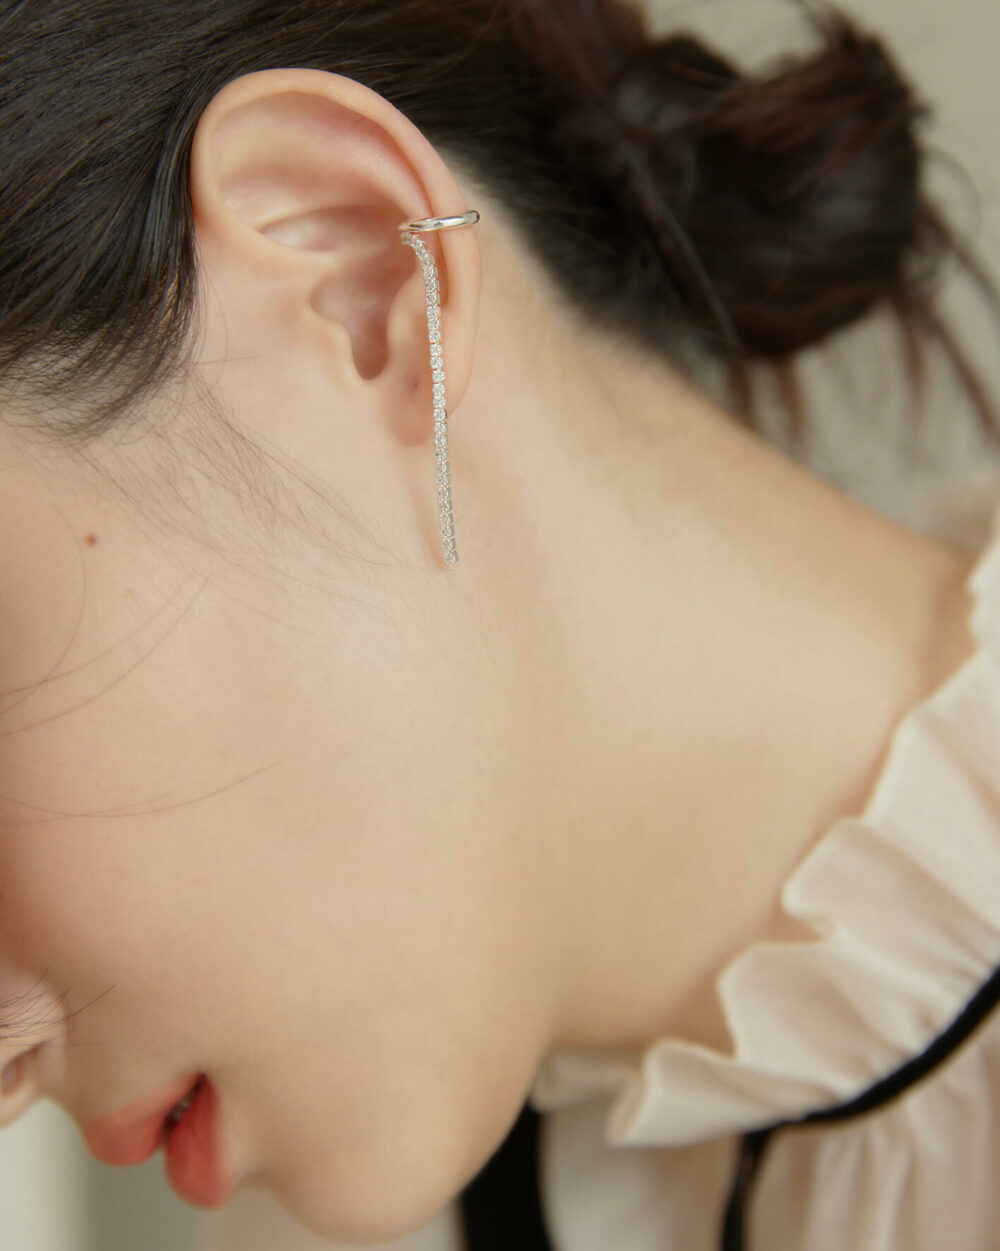 Eco安珂,韓國飾品,韓國耳環,韓國925純銀耳環,925純銀耳環,純銀耳骨夾,925純銀耳骨夾,925純銀垂墜耳骨夾